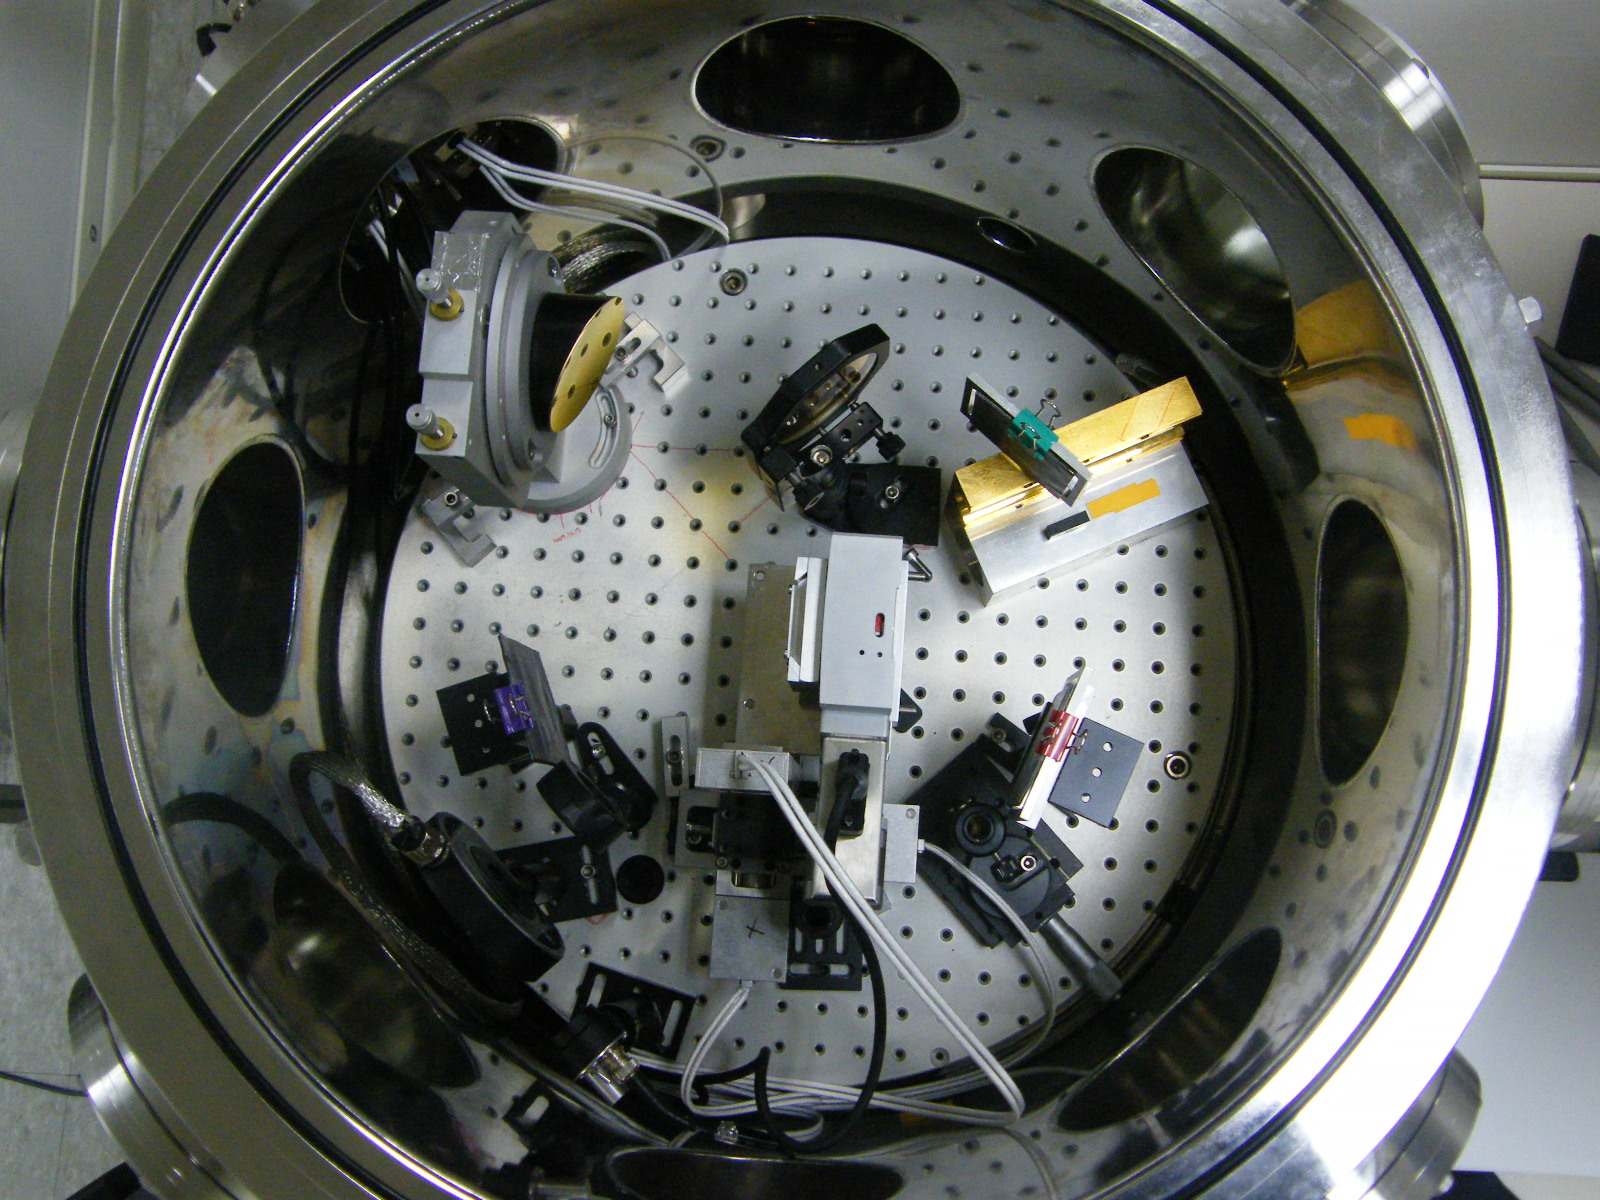 그림 3-86. 레이저 고속중성자 발생과 계측을 위한 챔버내의 실험장치 모습